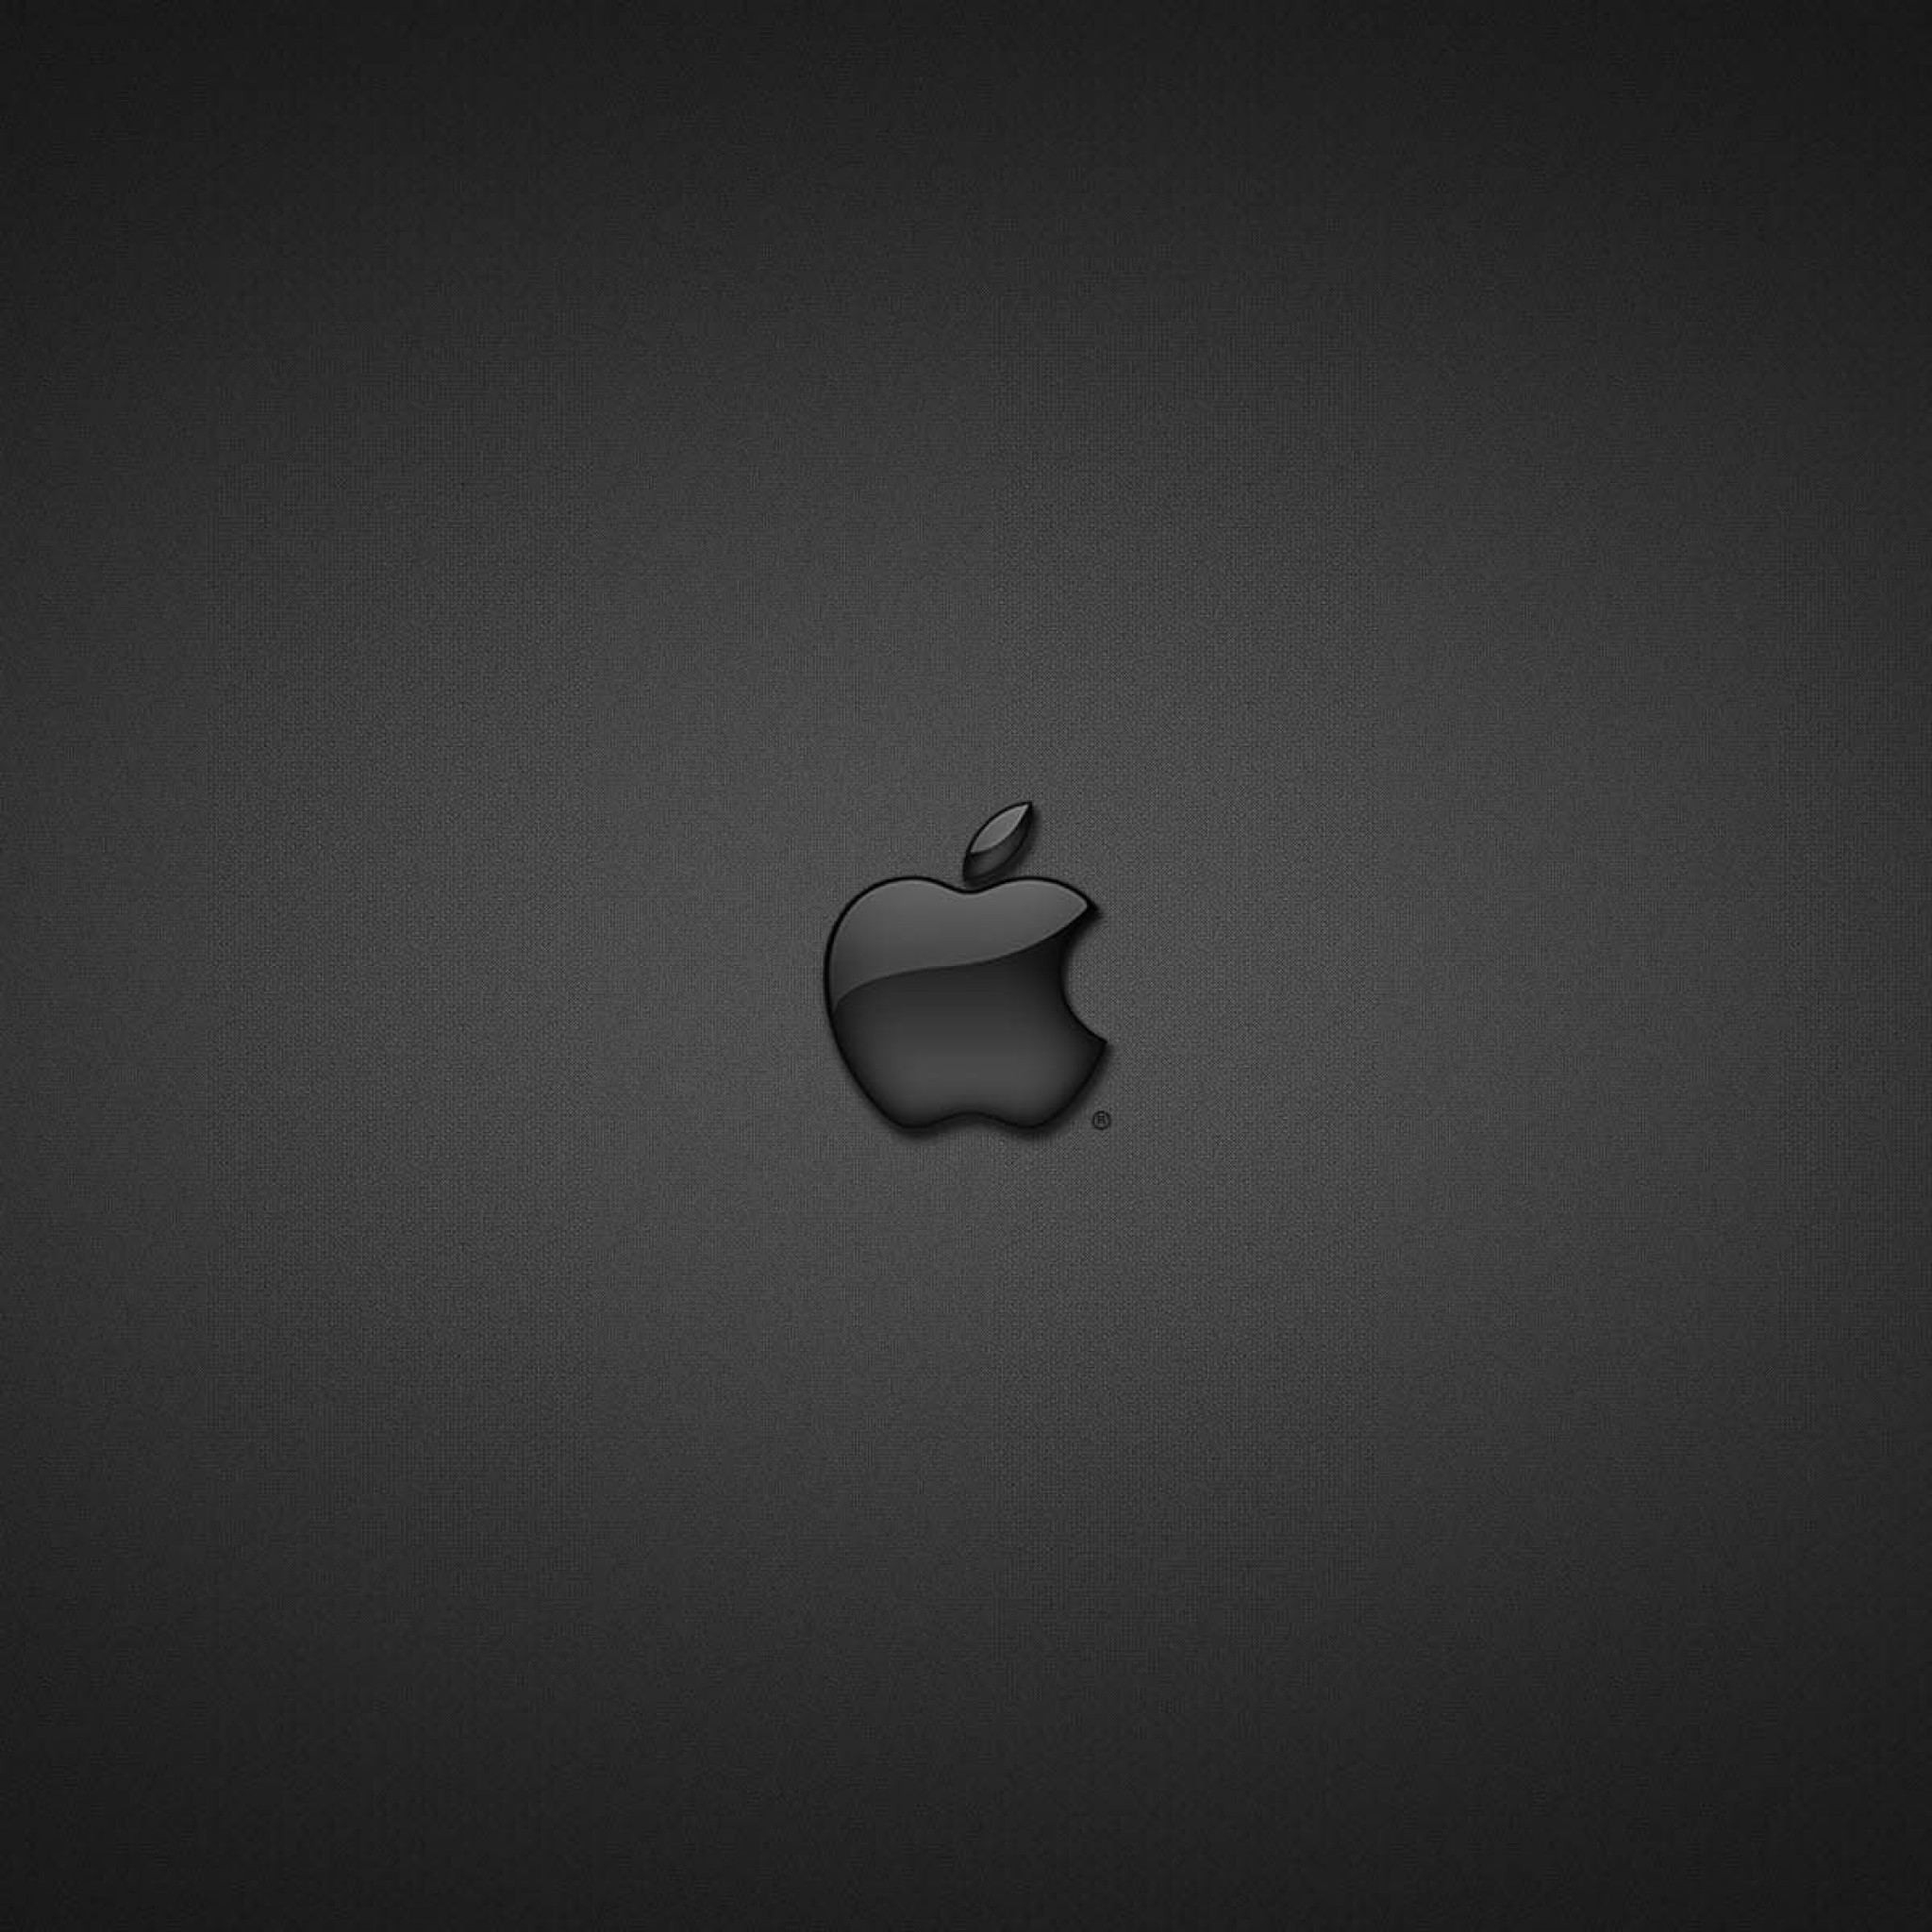 Значок айфона скопировать. Значок айфона. Логотип Apple. Яблоко айфон. Яблочко айфона маленькое.